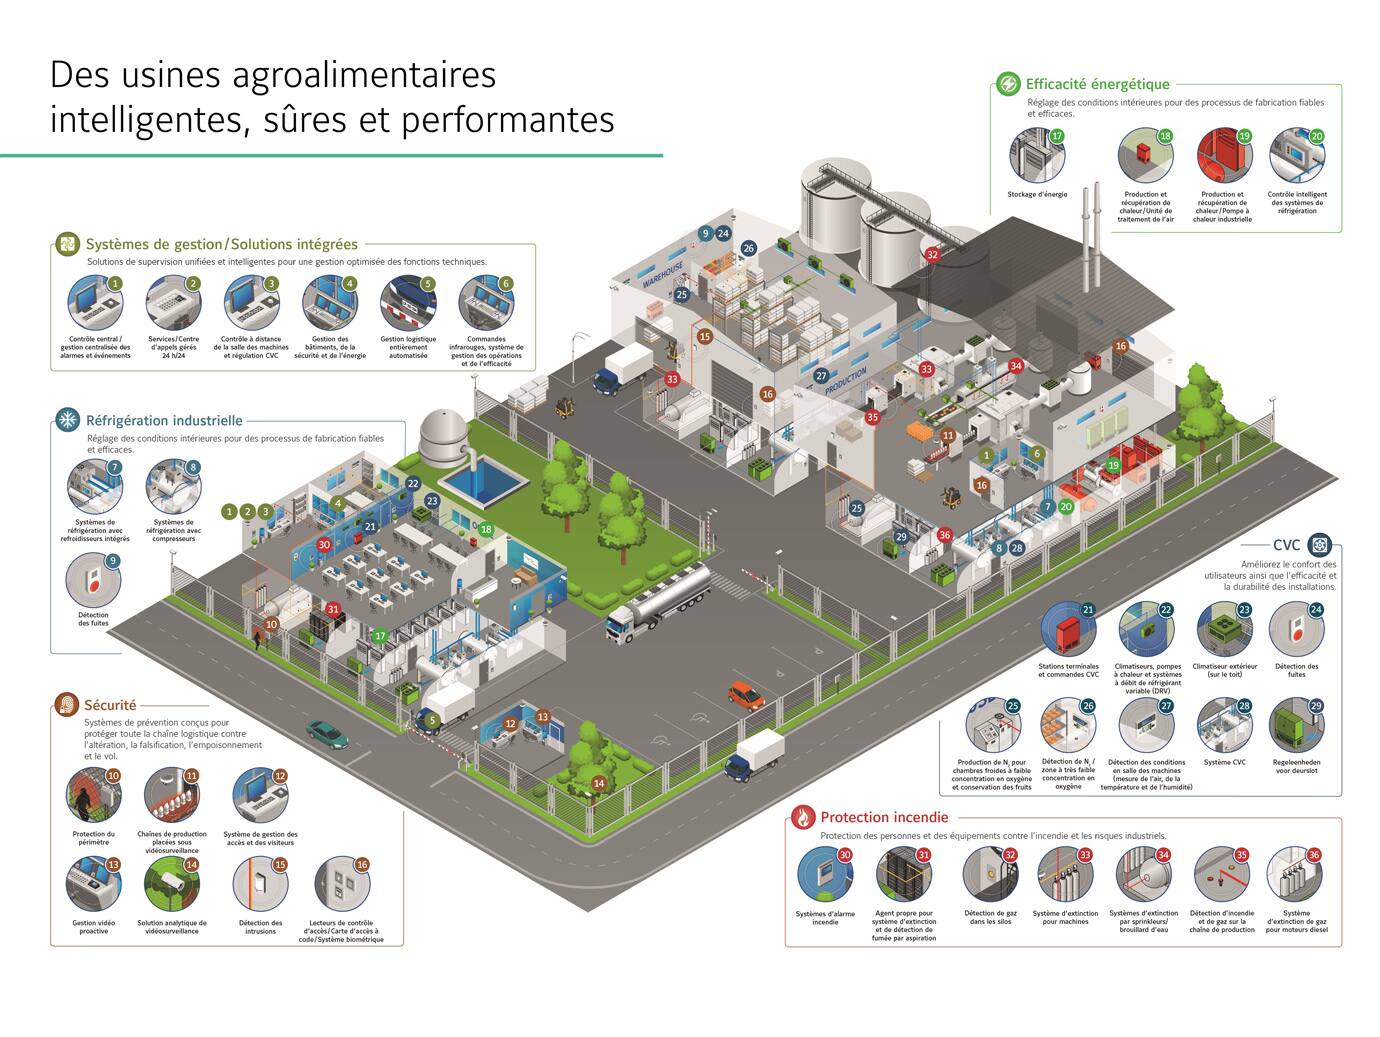 Des usines agroalimentaires intelligentes, sûres et performantes